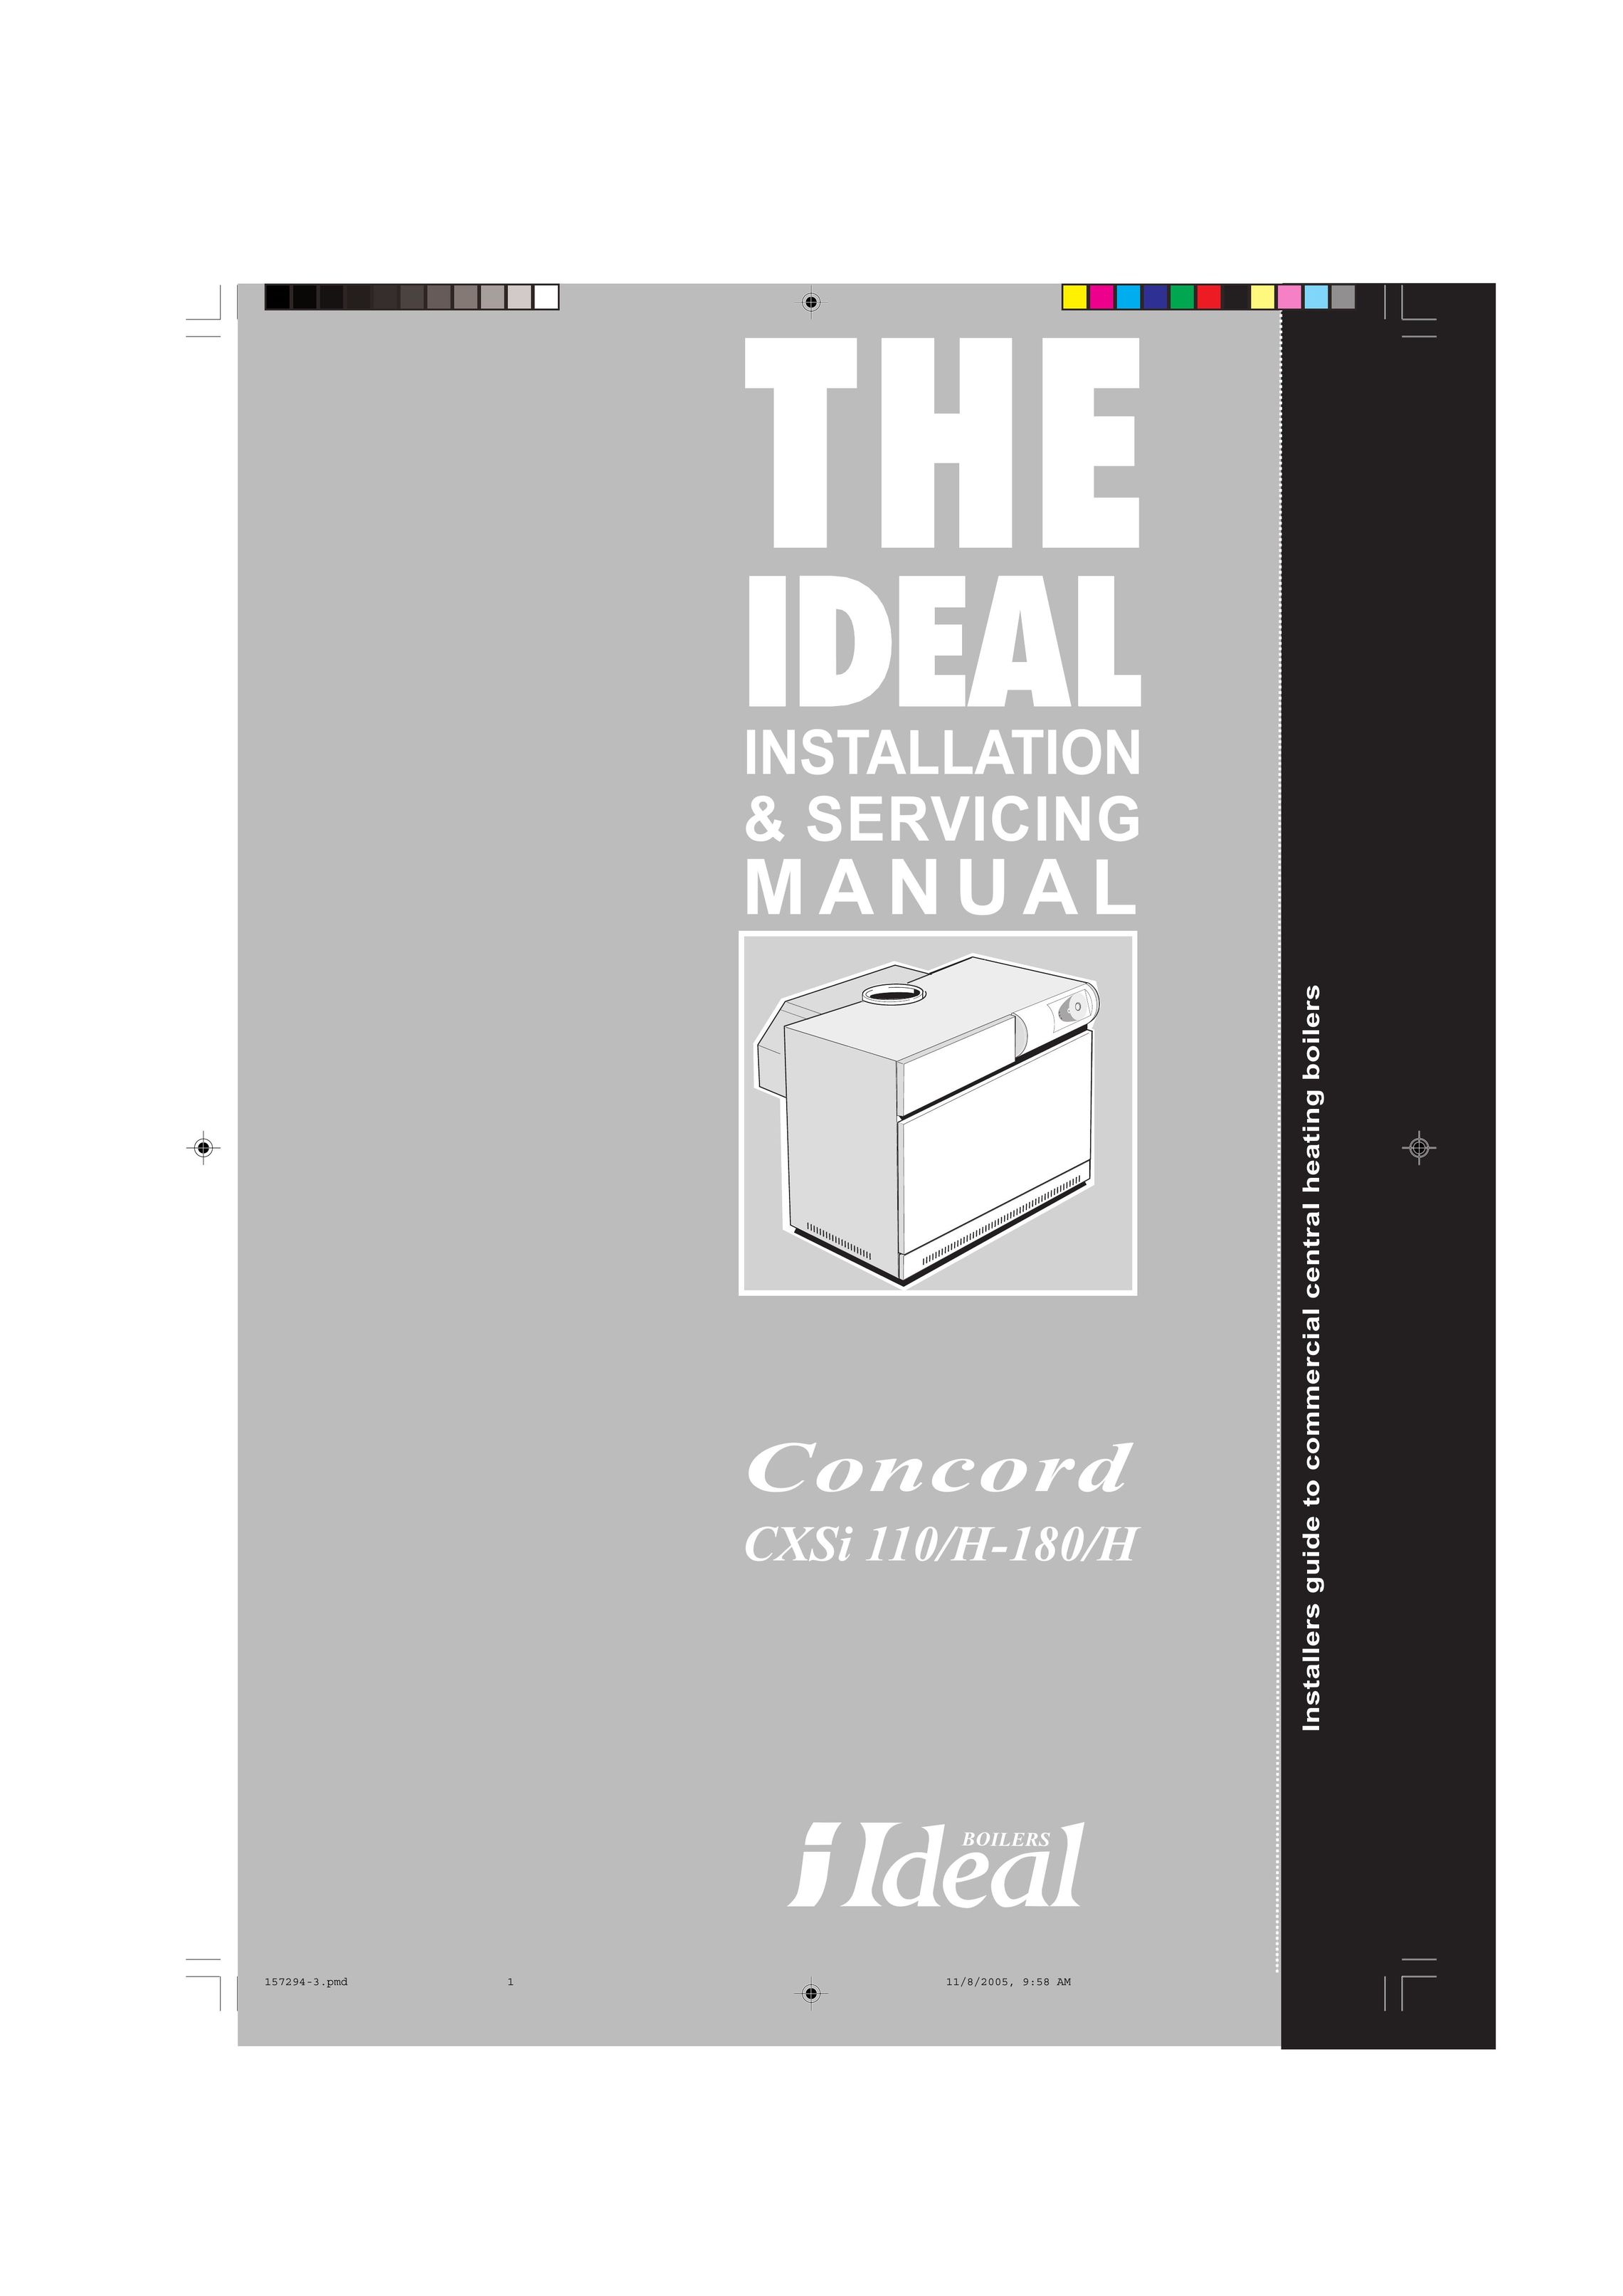 IDEAL INDUSTRIES H-180/H Boiler User Manual